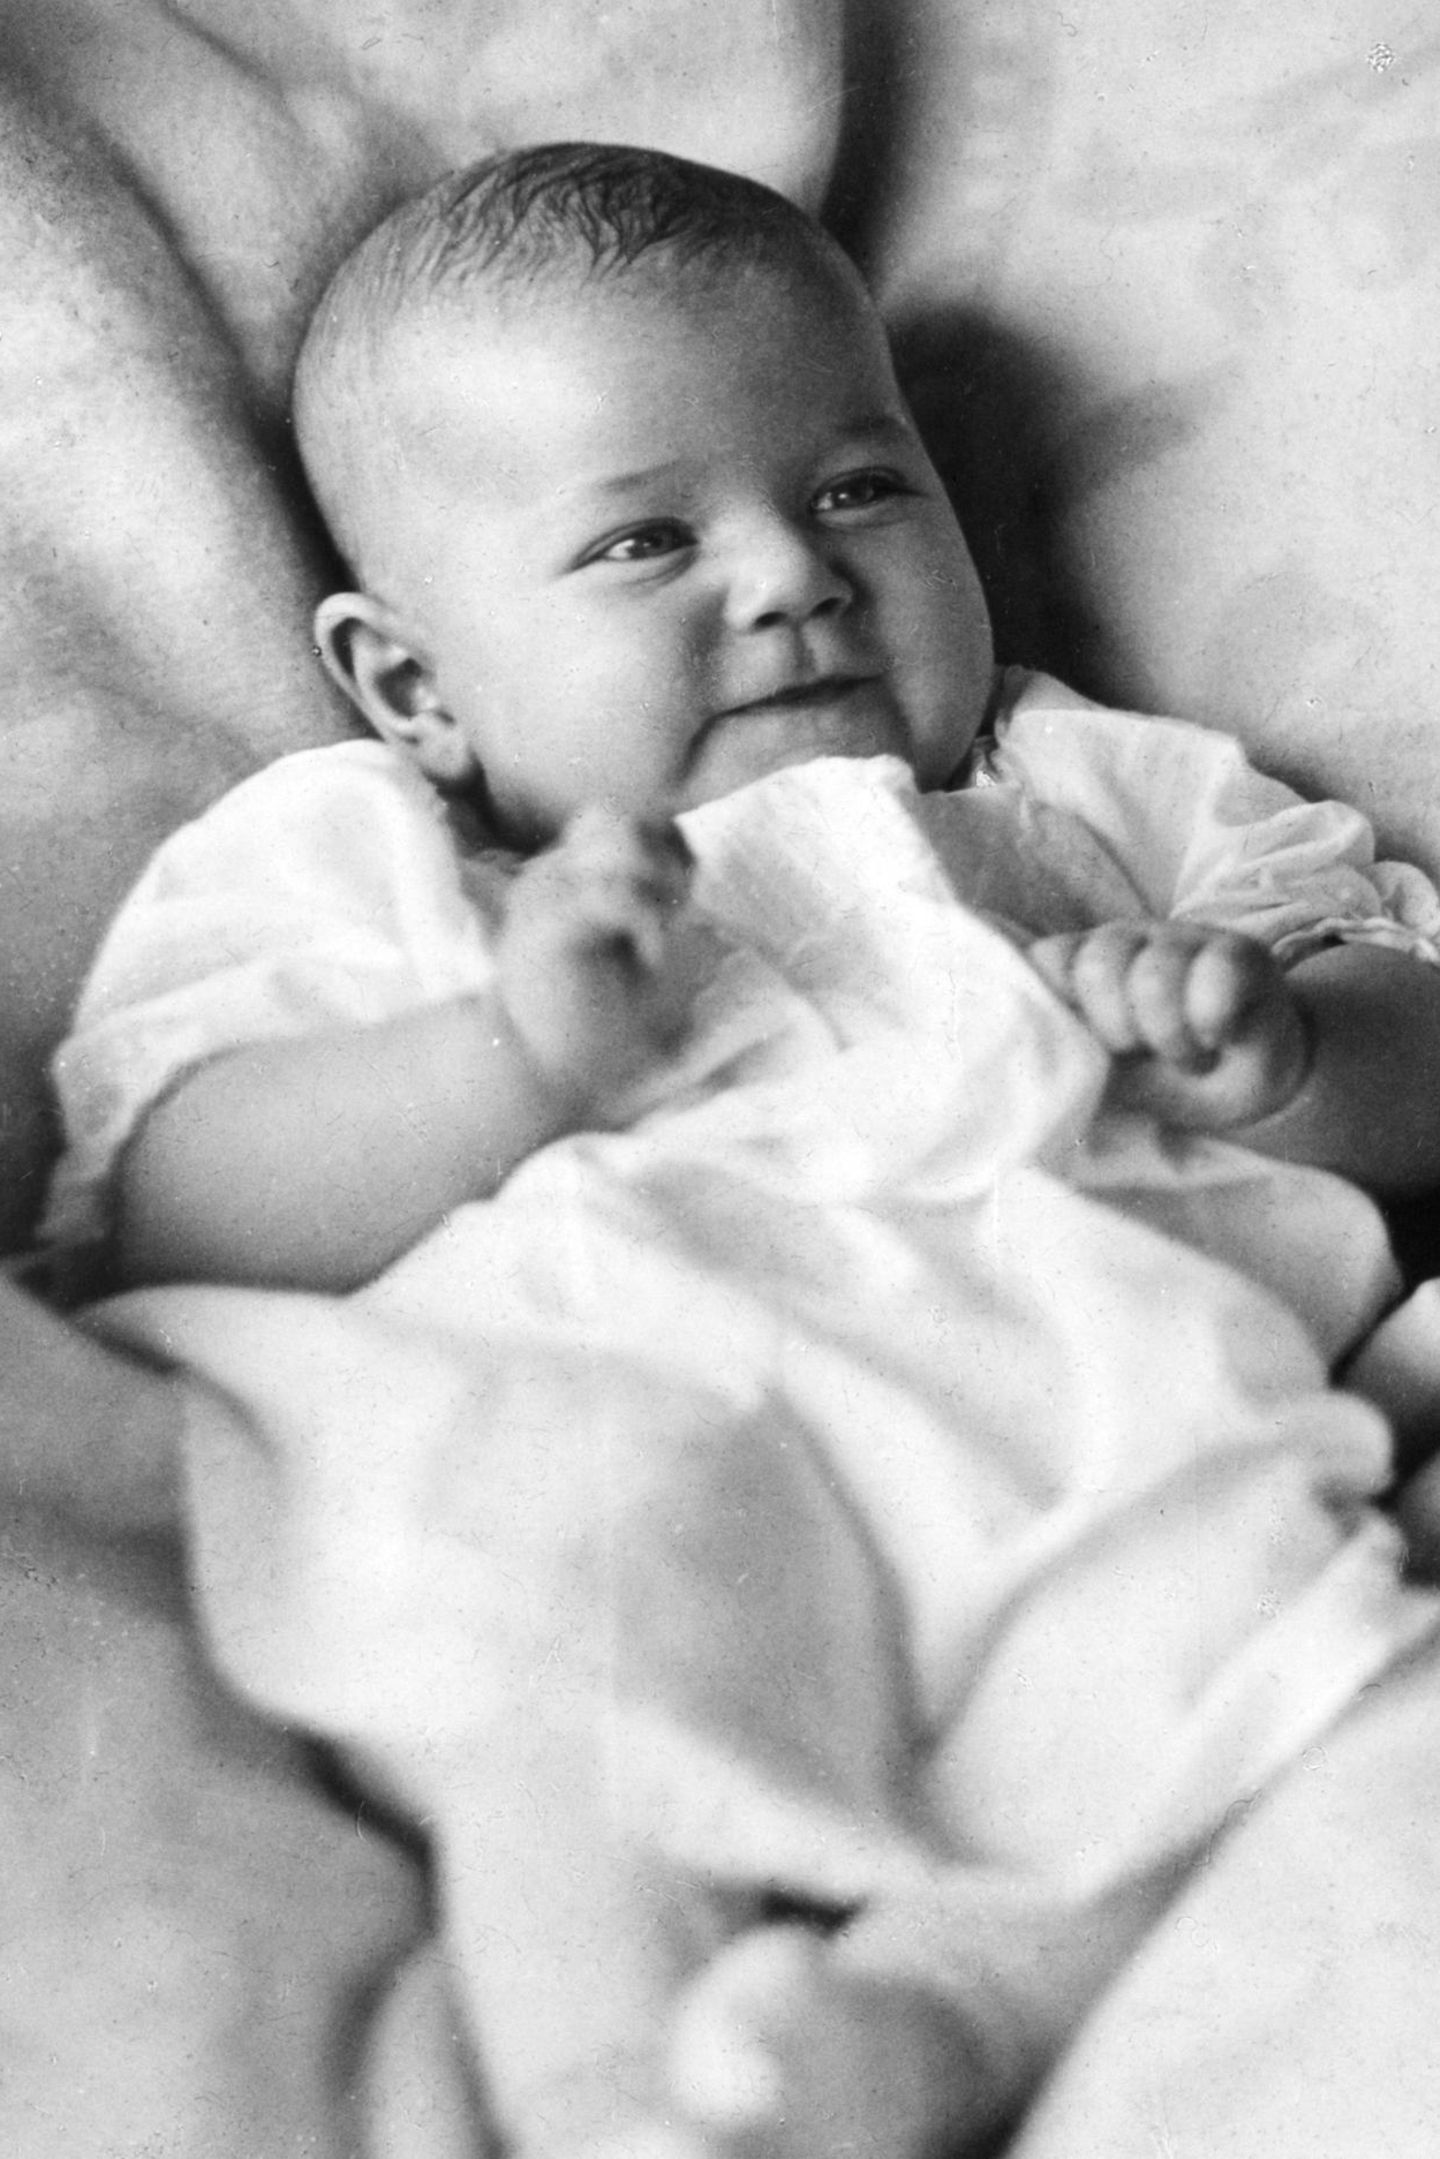 Am 3. April 1922 kommt Doris Day als Doris Mary Ann Kappelhoff in Cincinnati, Ohio zur Welt. Sie ist das dritte Kind des Musiklehrers William Kappelhoff und dessen Frau Alma Sophia Welz. Sowohl Vater als auch Mutter wurden als Kinder deutscher Einwanderer in den USA geboren.